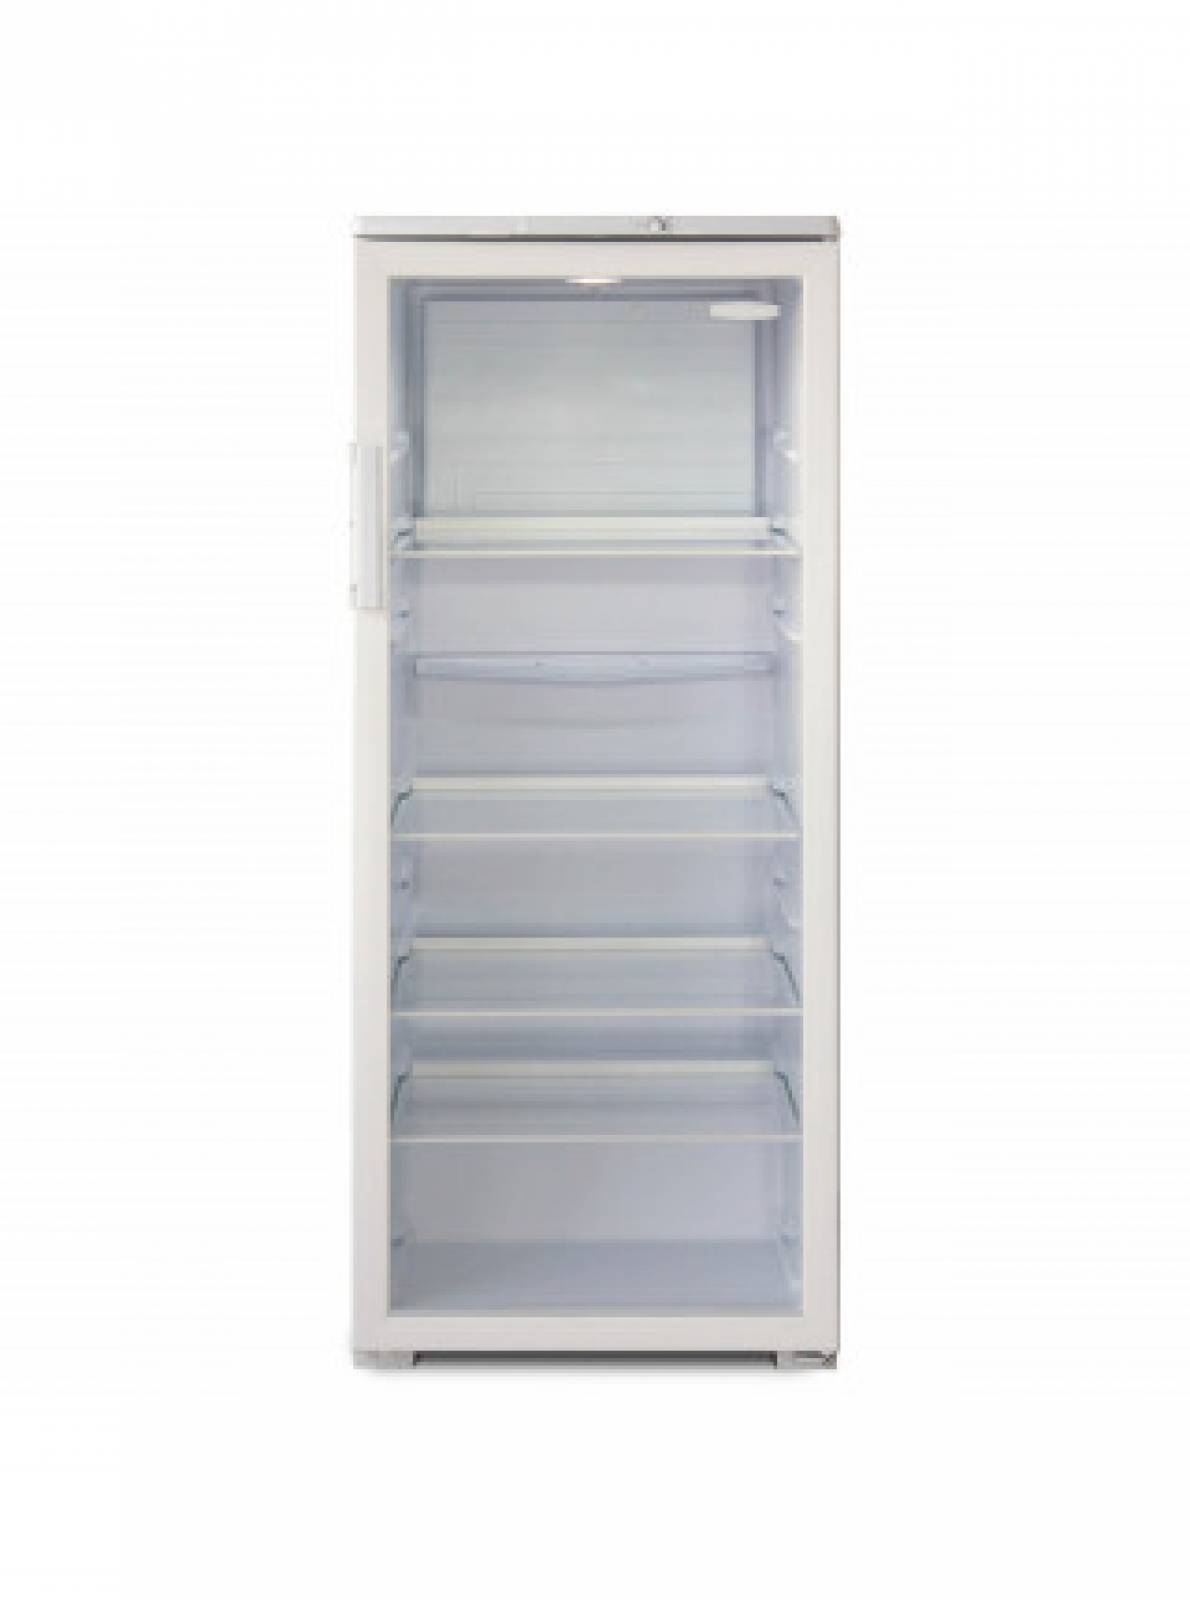 Холодильник витрина бирюса. Холодильник Бирюса 290 витрина. Холодильный шкаф Бирюса 290 белый. Шкаф-витрина Бирюса 290. Холодильная витрина Бирюса 310.